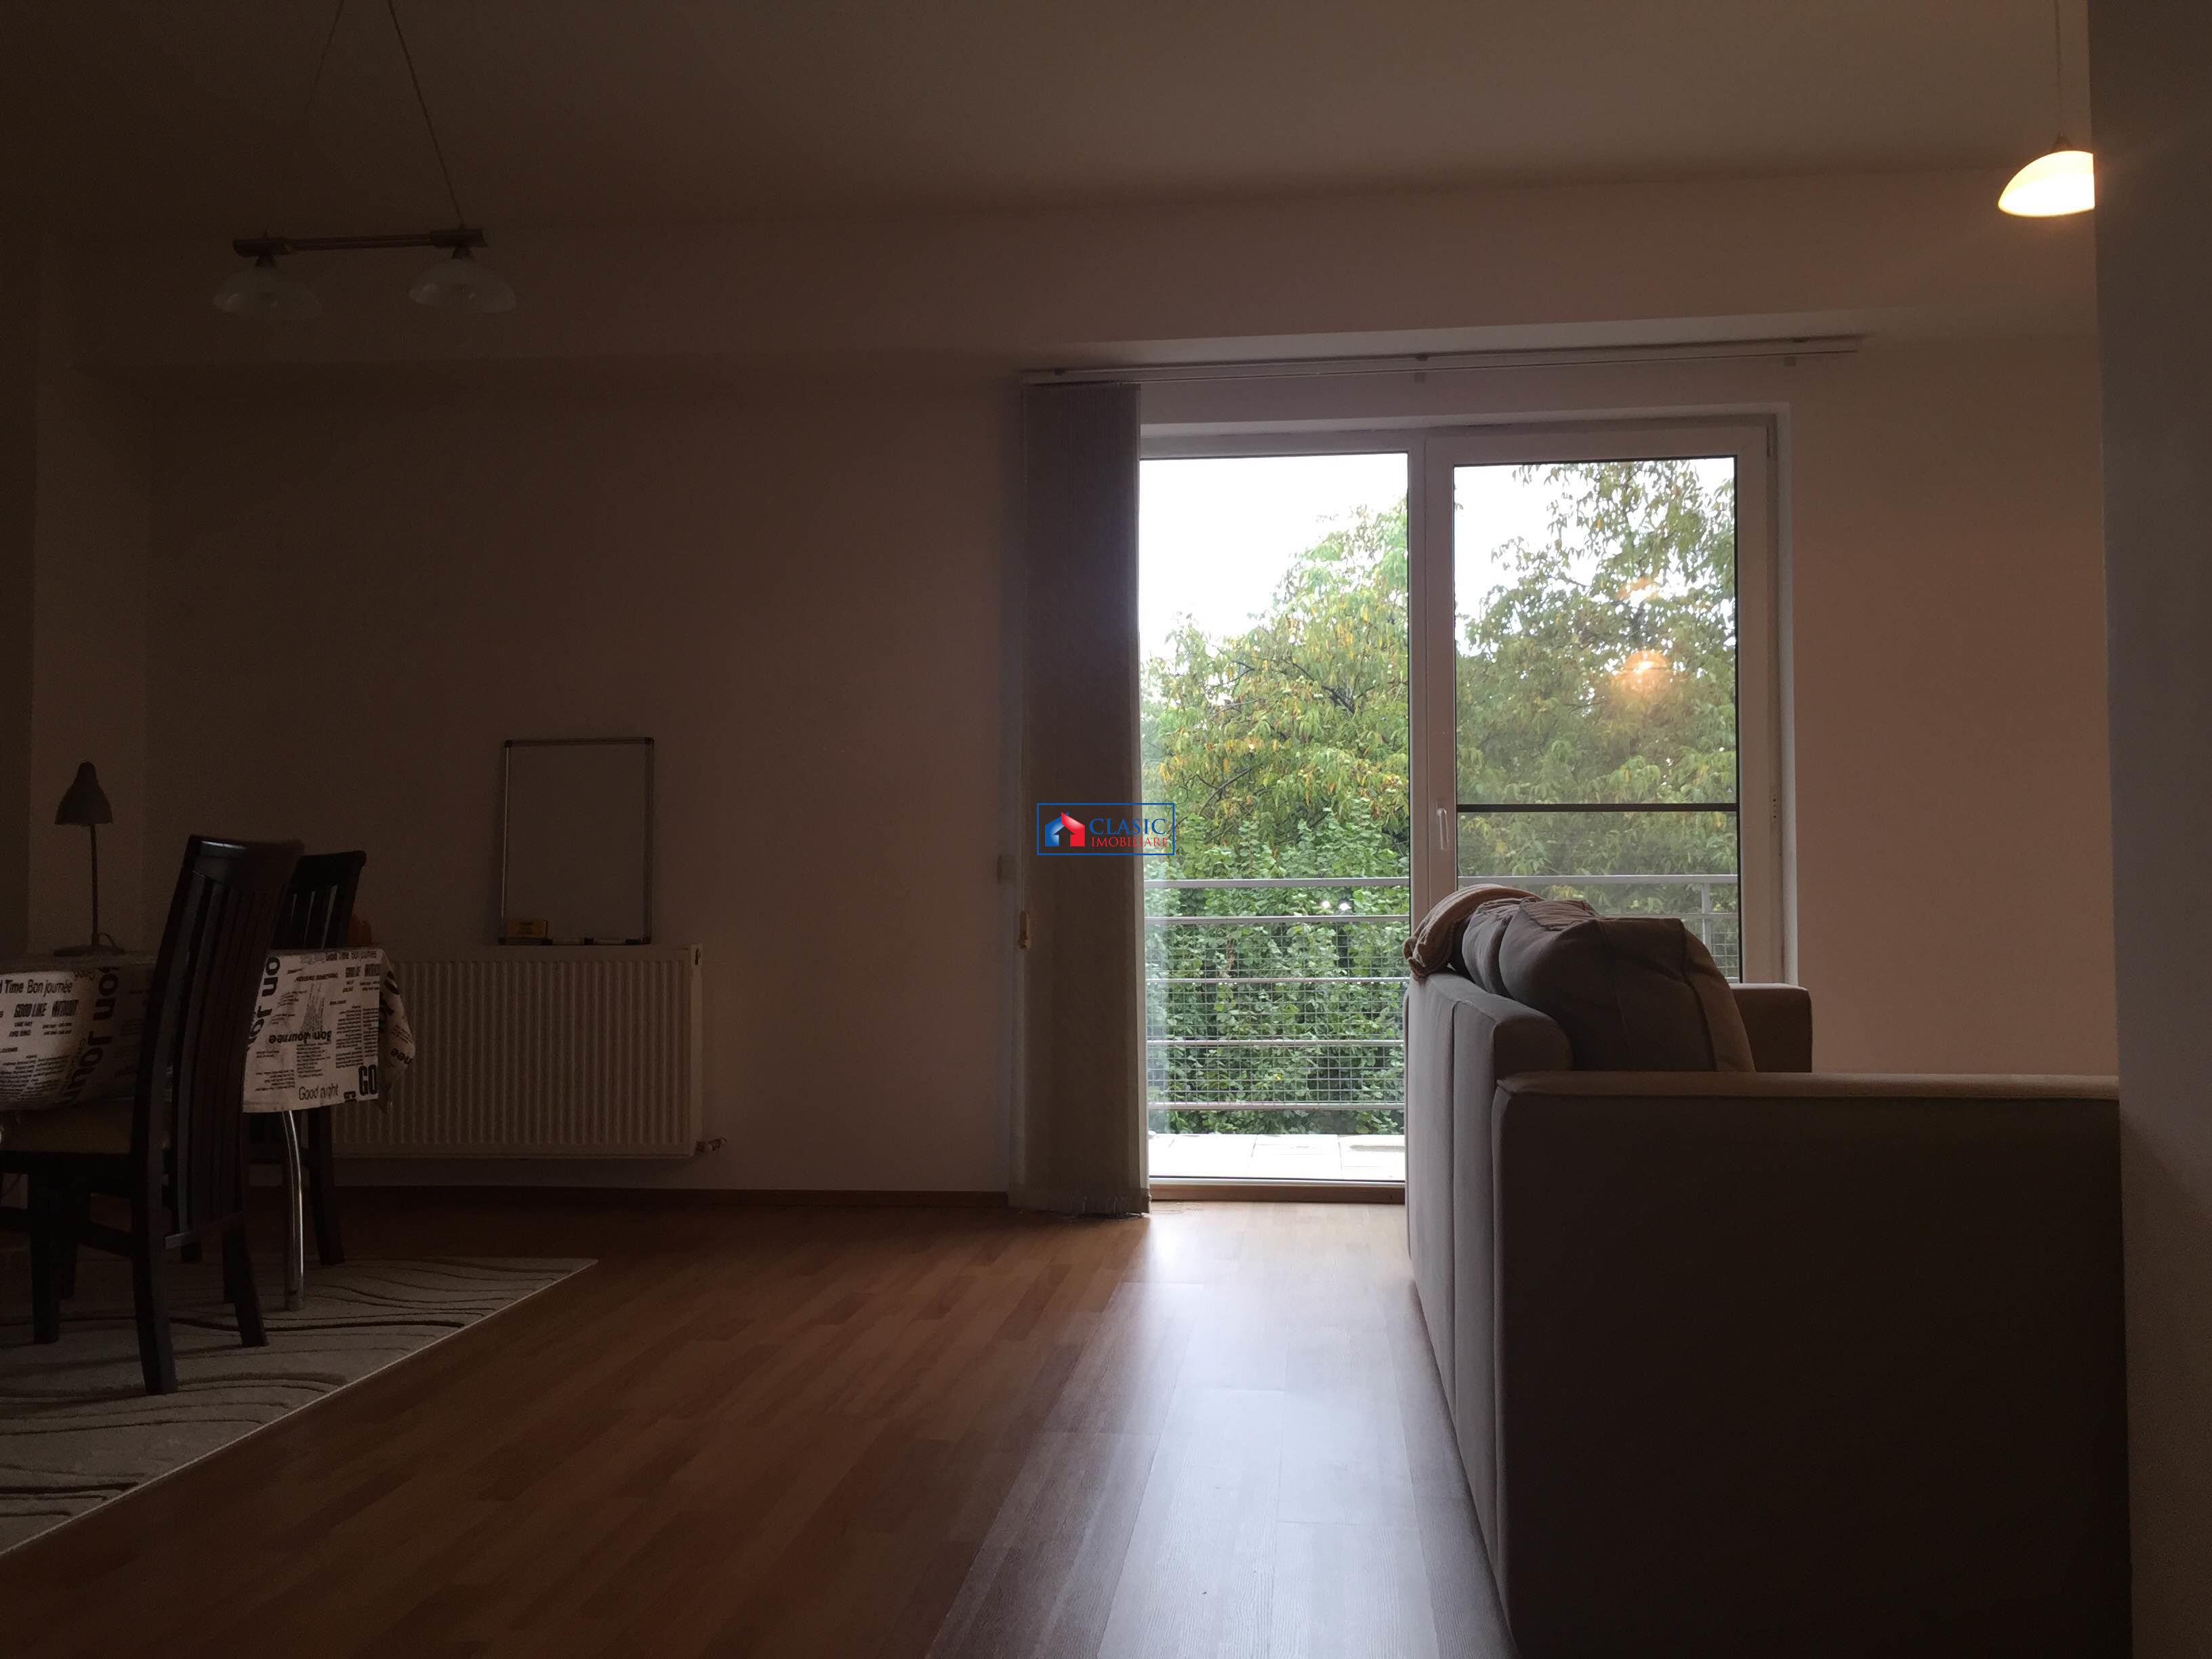 Inchiriere Apartament 2 camere in bloc nou zona Centrala, Cluj Napoca